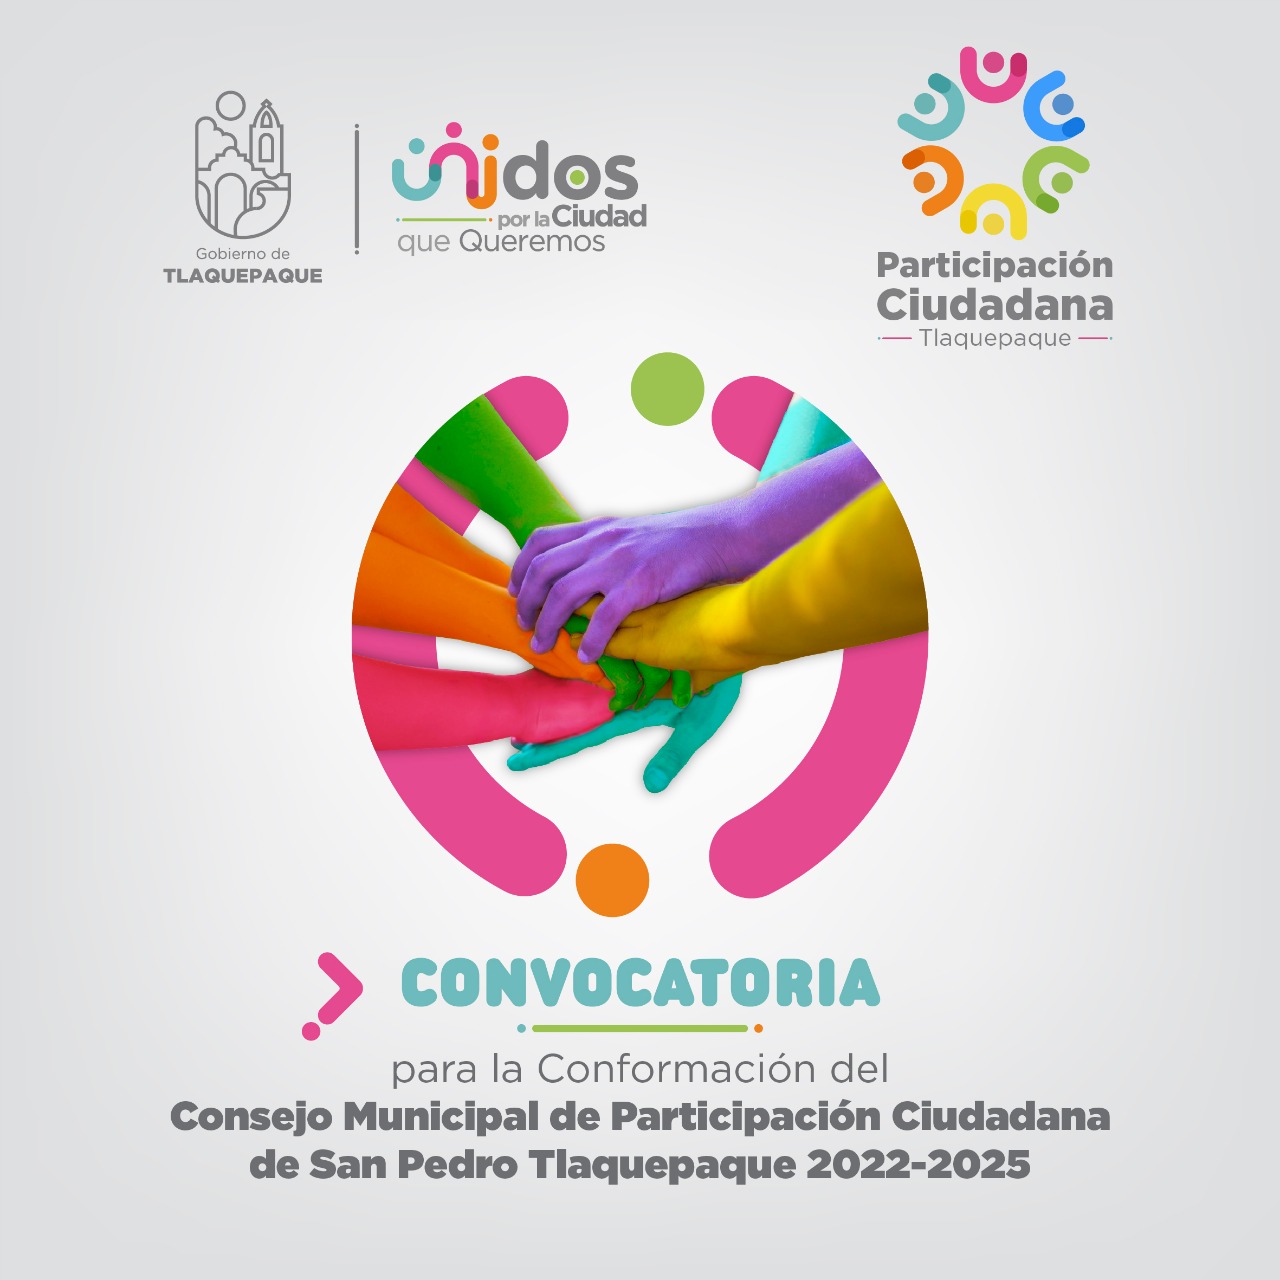 Convocatoria para la Conformación del Consejo Municipal de Participación Ciudadana de San Pedro Tlaquepaque 2022-2025